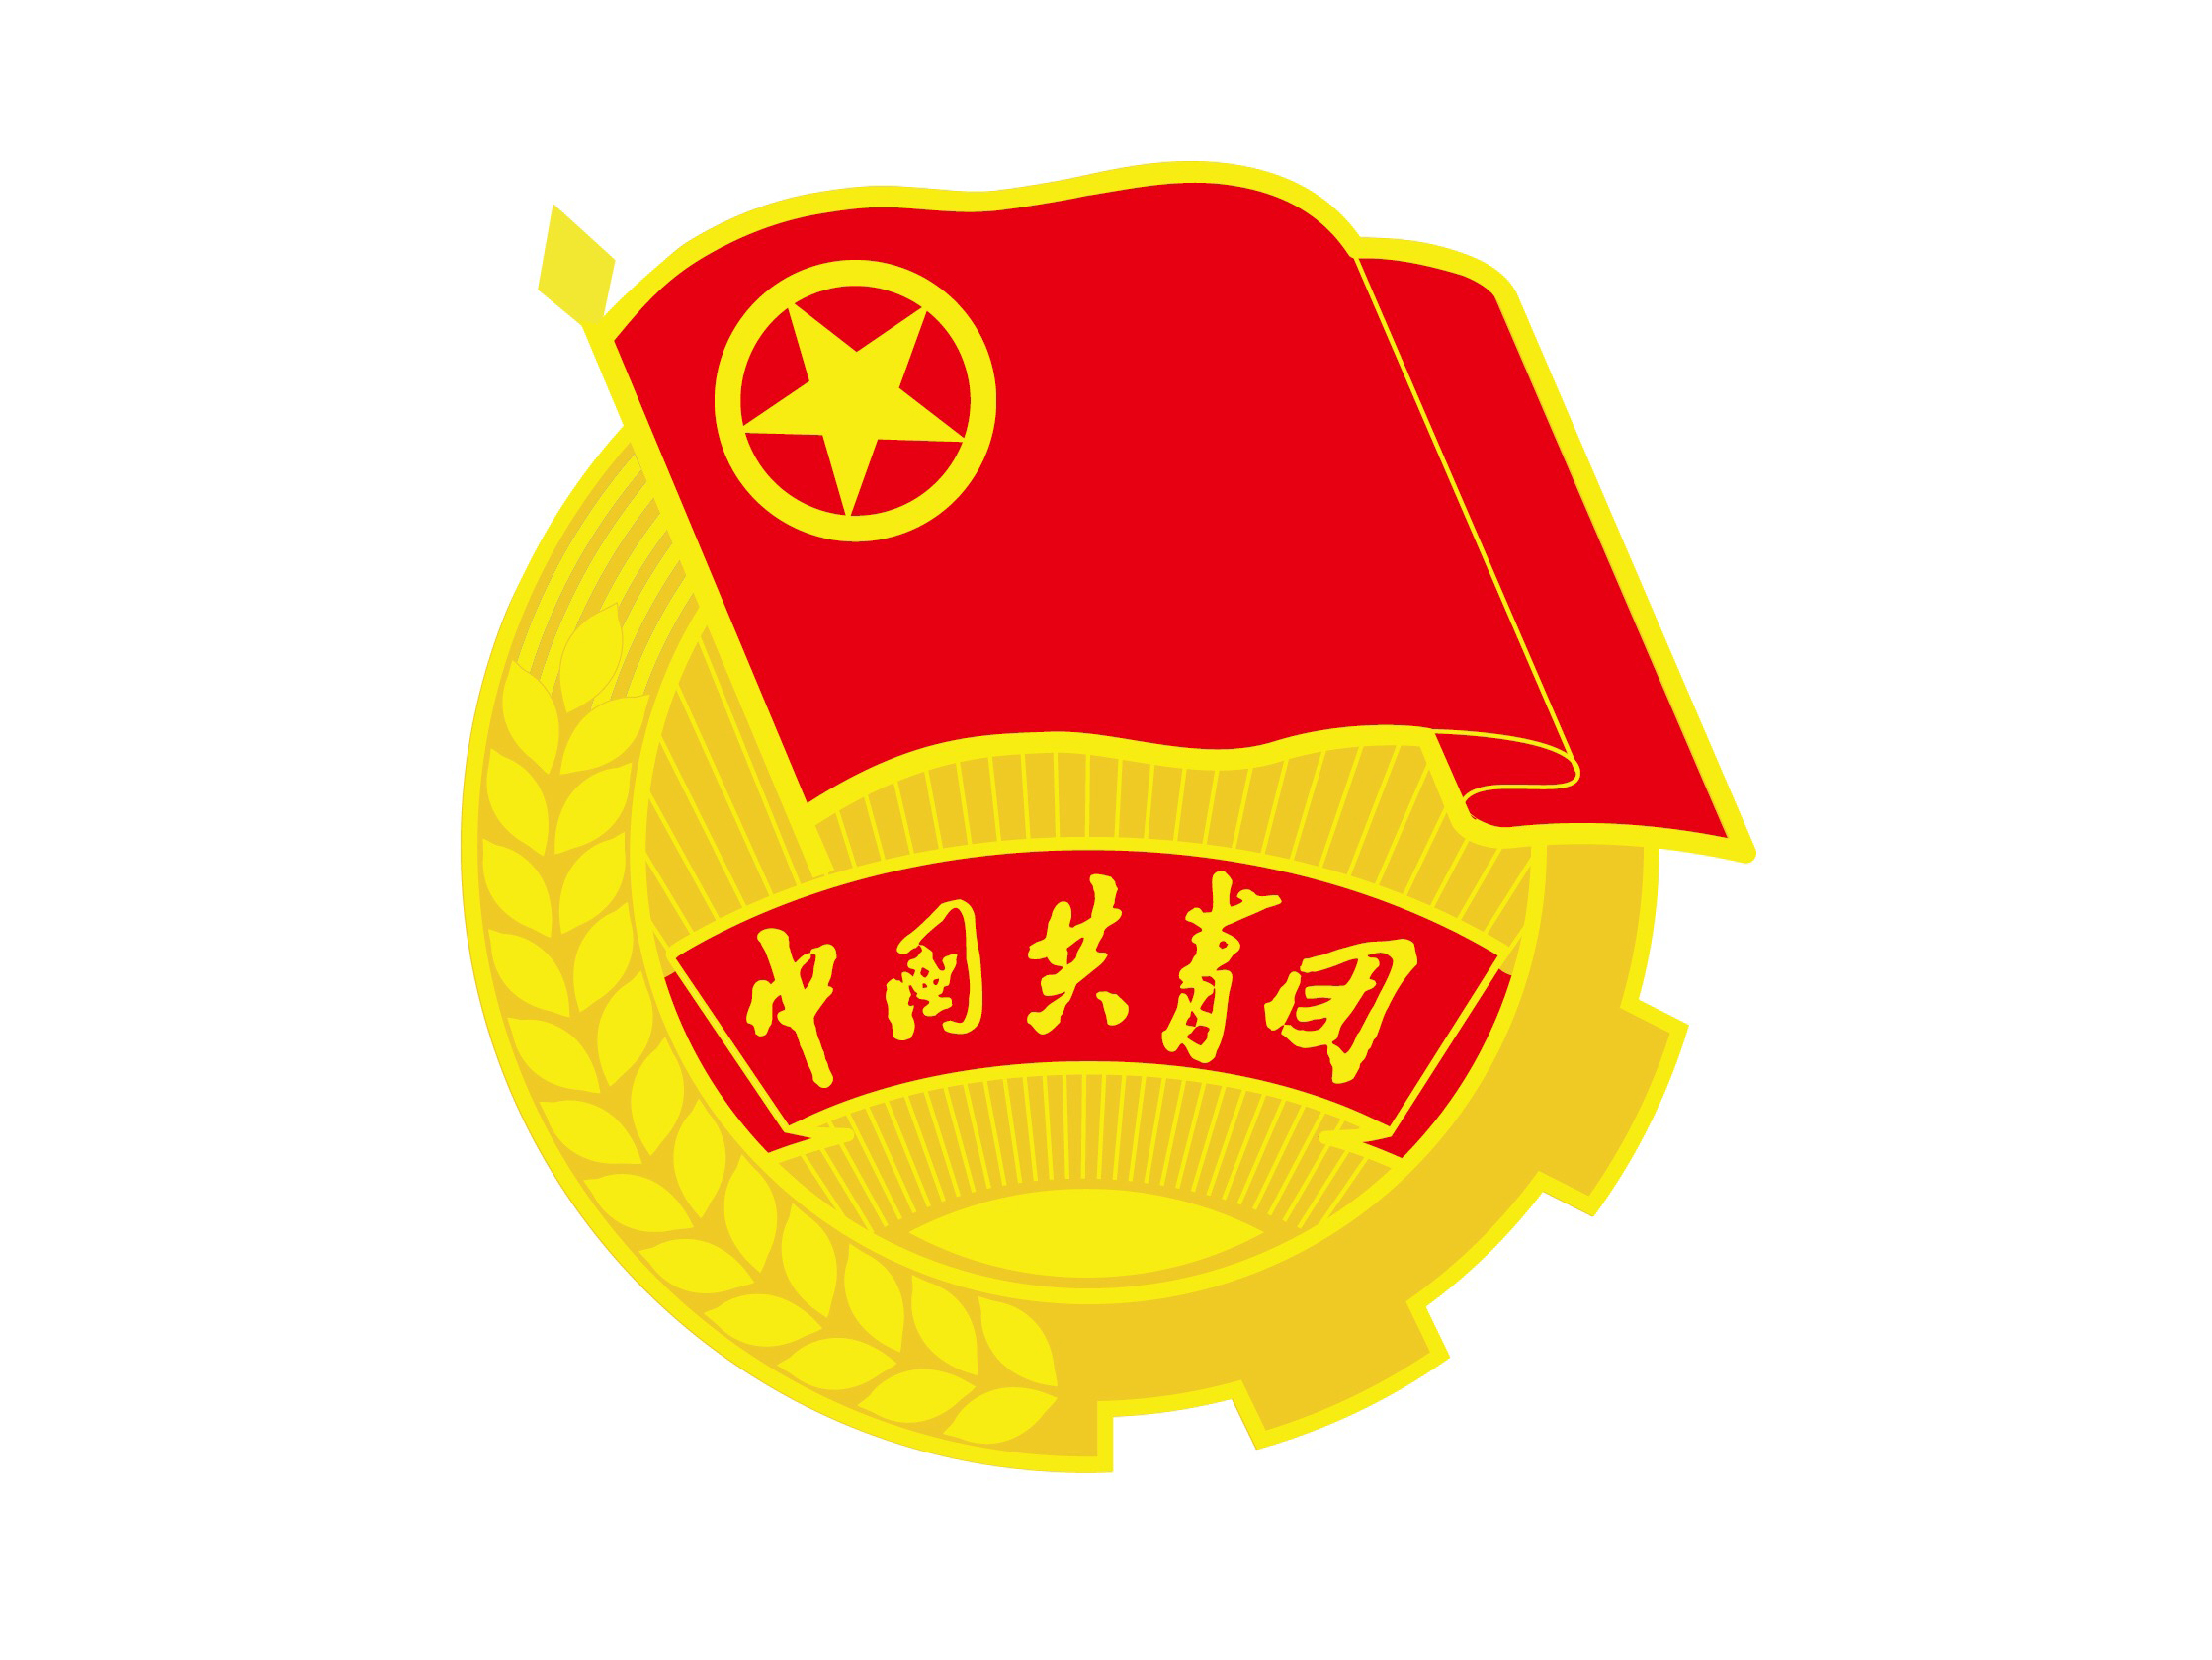 中國共產主義青年團團徽(團徽)